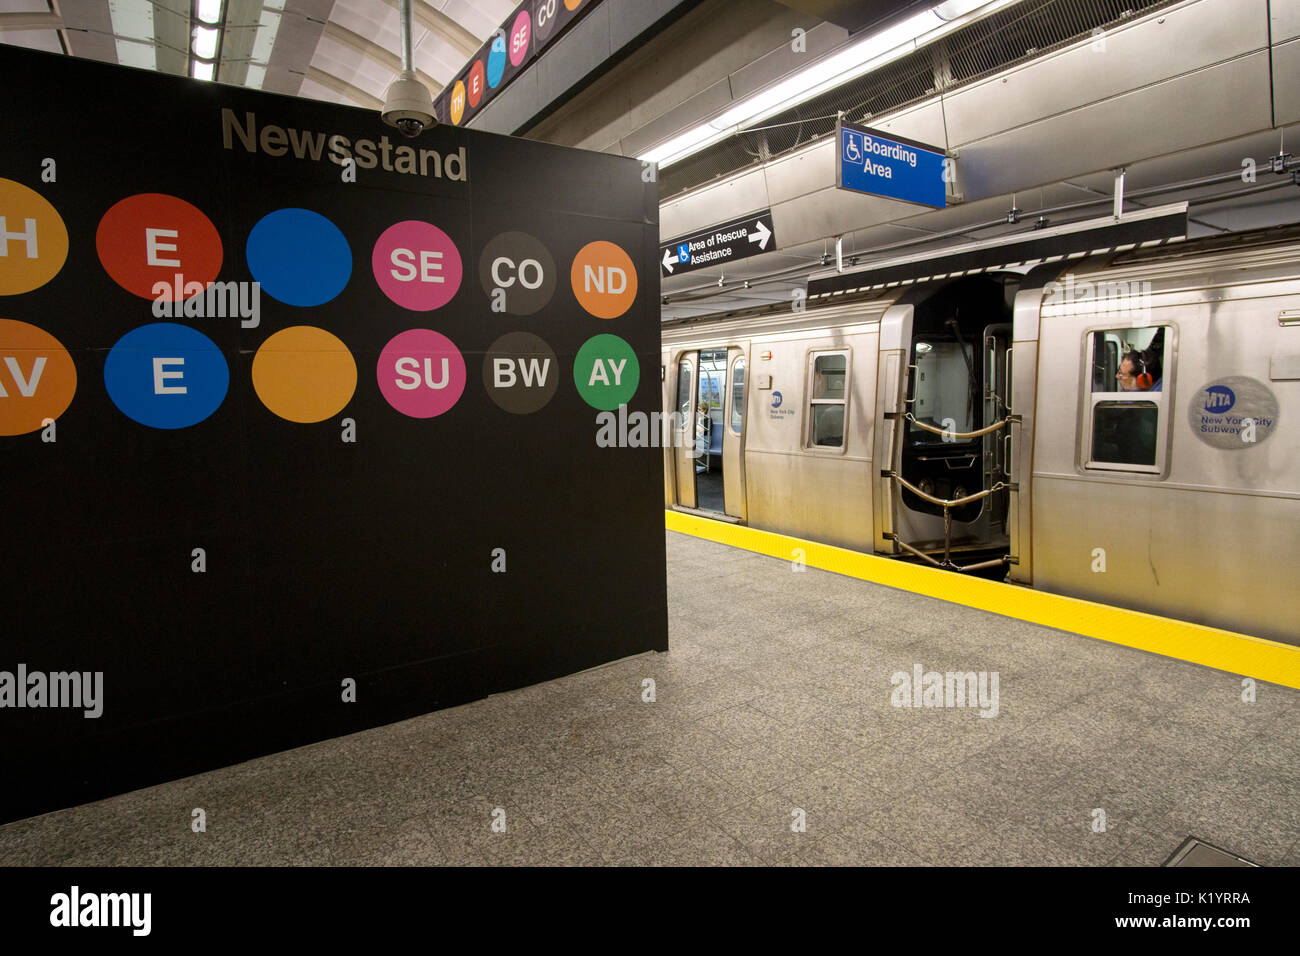 Q'un train à la station de métro 86th Street sur la nouvelle ligne sur la 2e avenue, l'Upper East Side de Manhattan, New York City Banque D'Images